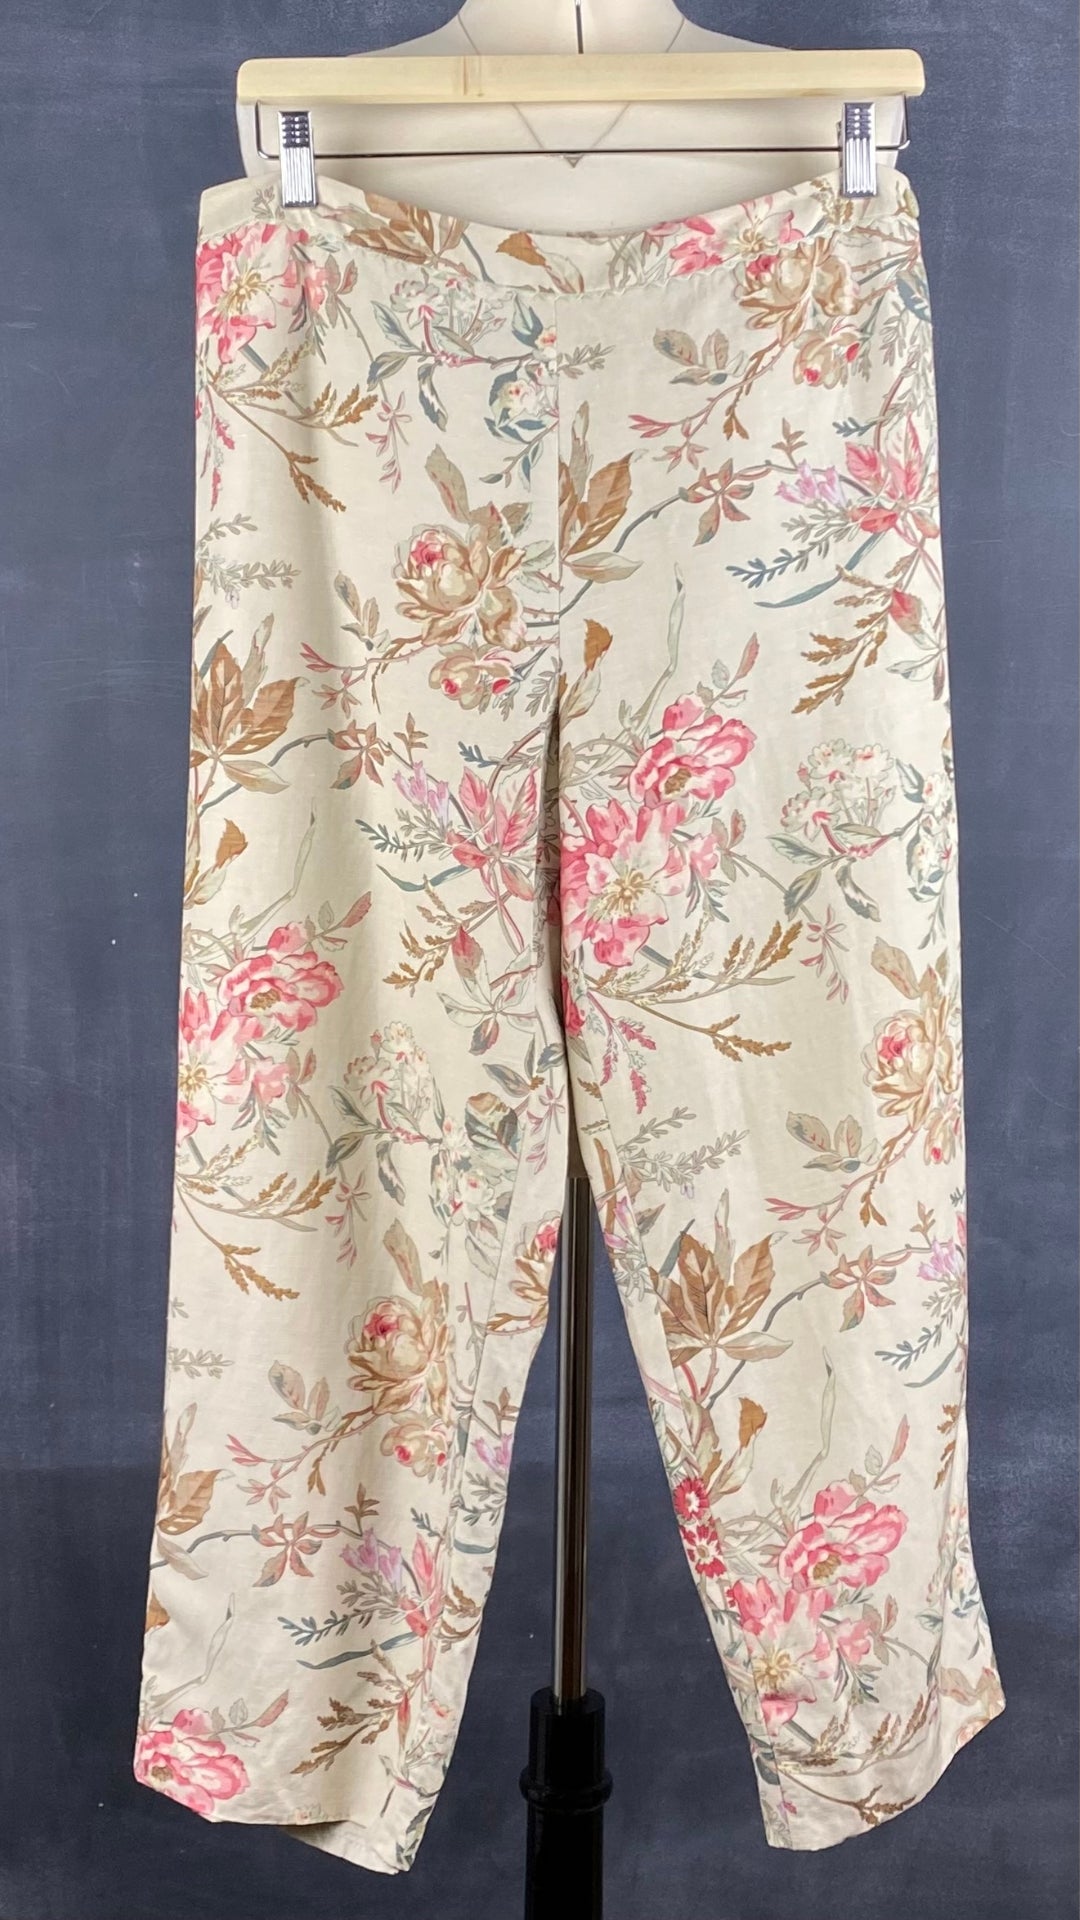 Pantalon motif floral en soie et lin Sutton Studio, taille 10. Vue de face.